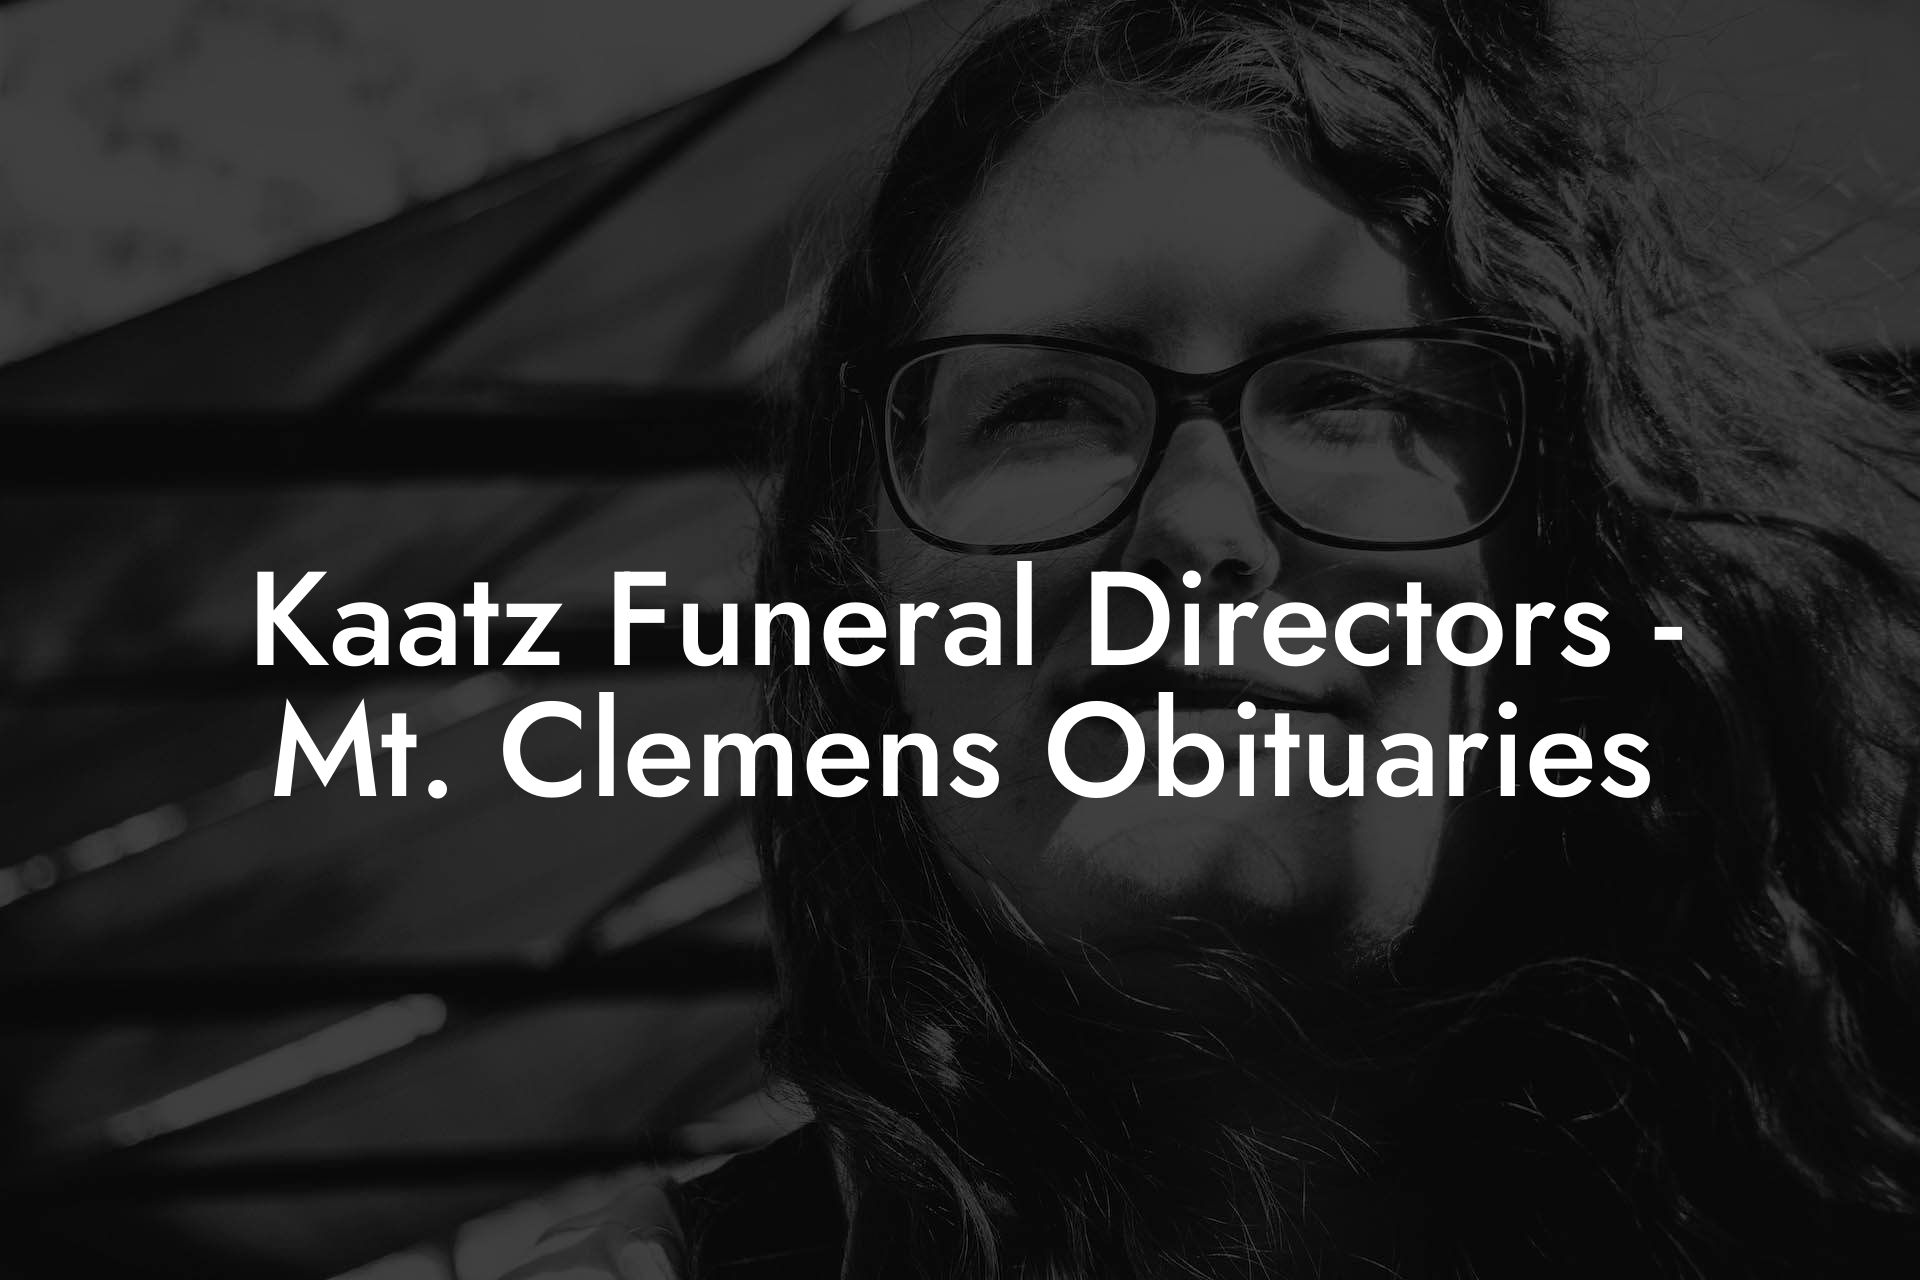 Kaatz Funeral Directors - Mt. Clemens Obituaries